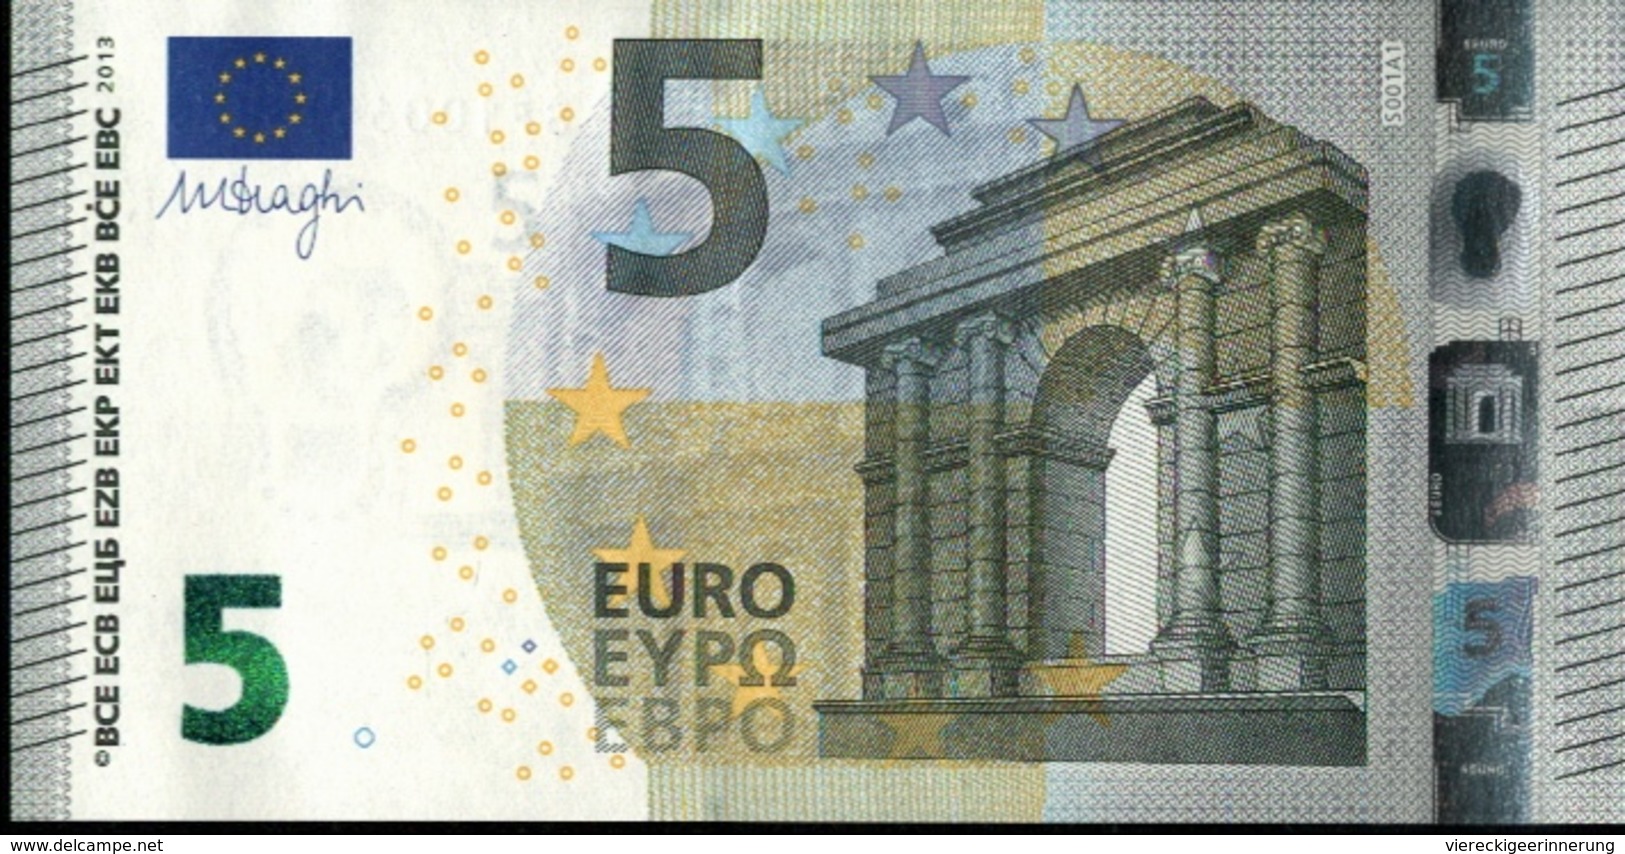 ! 5 Euro Unc., S001A1, SF1006416351 Currency, Banknote, Billet Mario Draghi, EZB, Europäische Zentralbank - 5 Euro